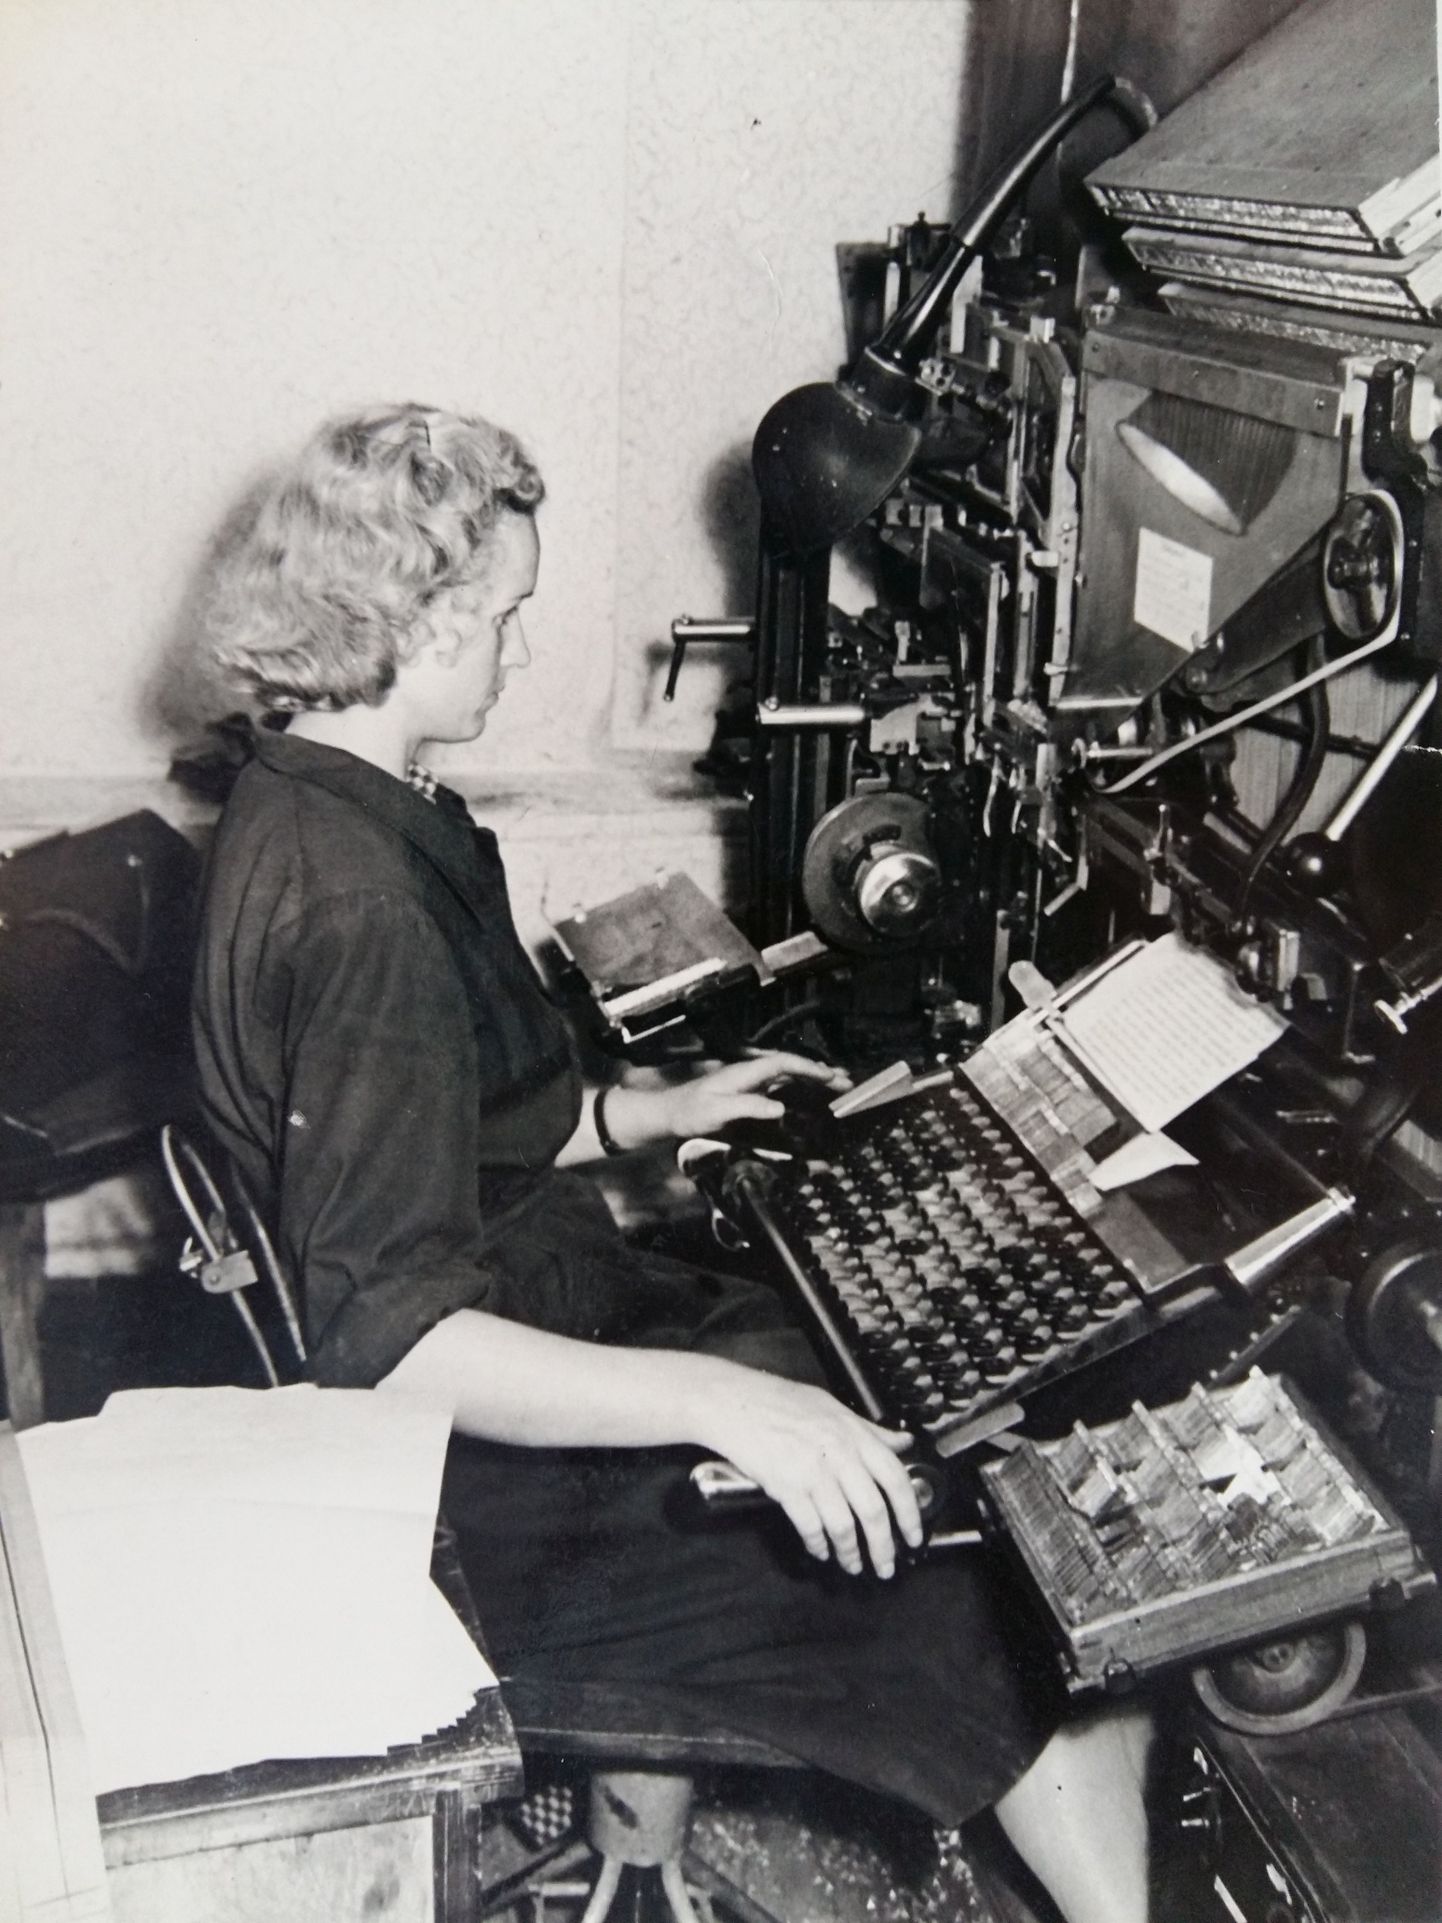 Laduja Niina Leesik tipib käsikirjast teksti klaviatuuri abil realadumismasinasse ehk linotüüpi, millest väljub ladu tähematriitside järgi trükitinast valatud ridadena.